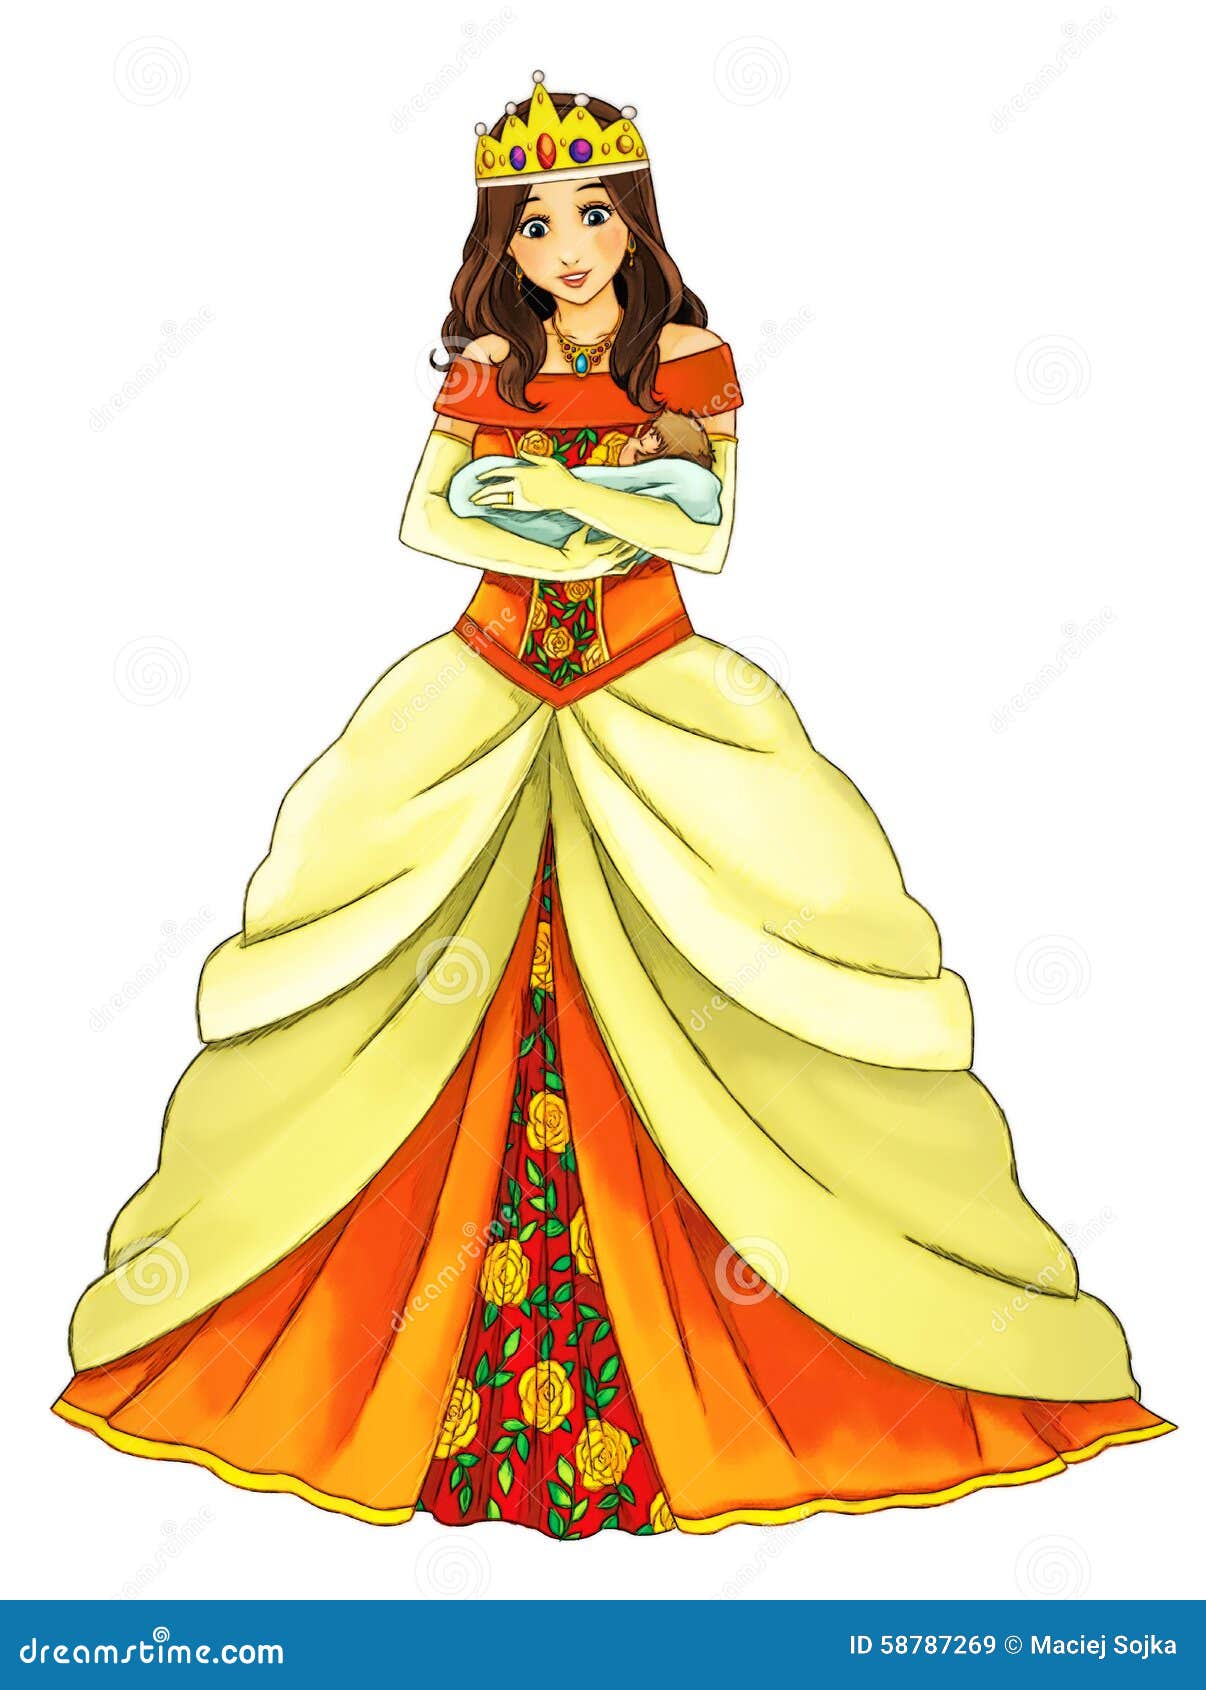 Cartoon queen - stock illustration. Illustration of fairytale - 58787269